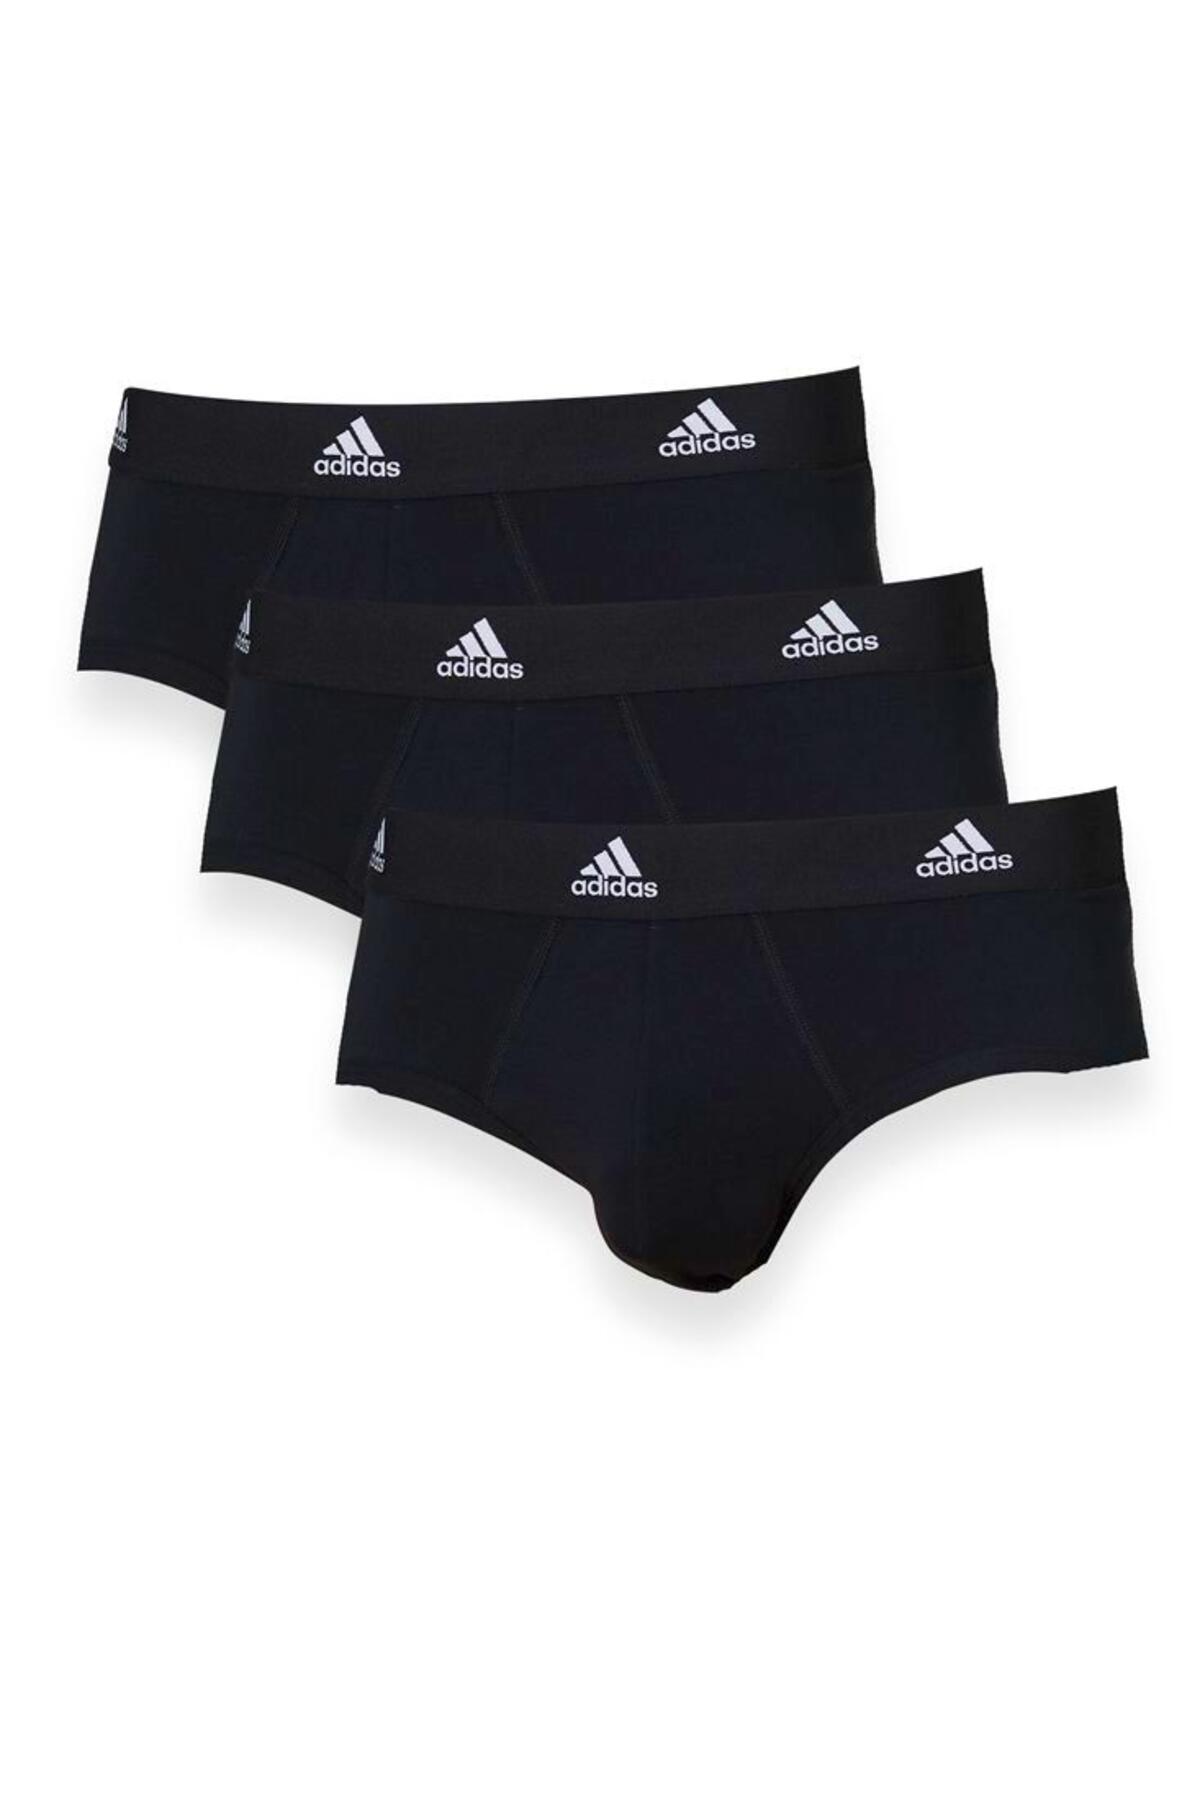 Adidas 4A1M01 stretch cotton men's briefs - underwear - MEN UNDERWEAR